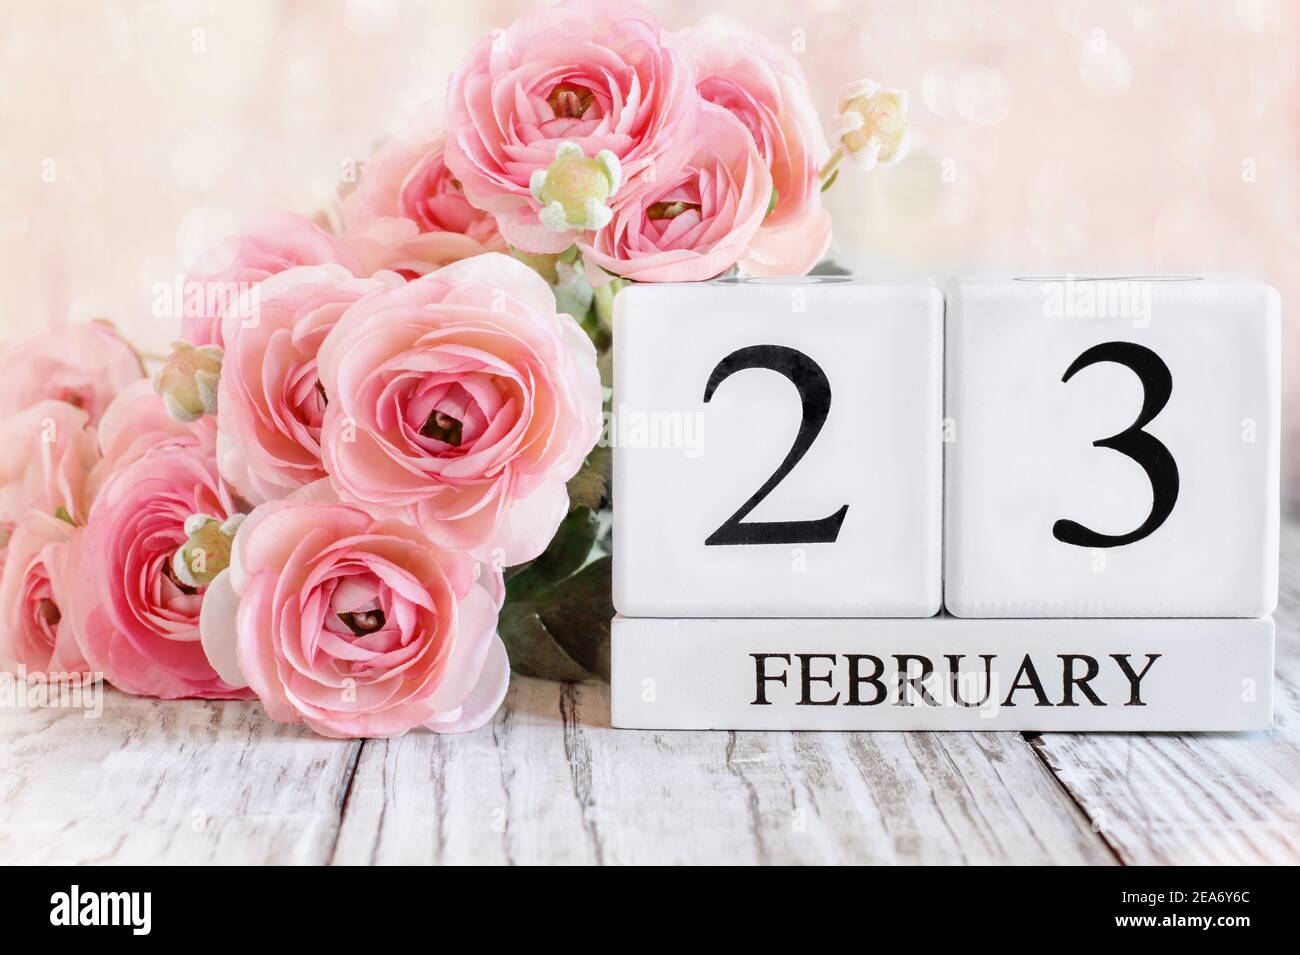 Weiße Holz Kalenderblöcke mit dem Datum Februar 23rd und rosa Ranunculus Blumen über einem Holztisch. Selektiver Fokus mit unscharfem Hintergrund. Stockfoto